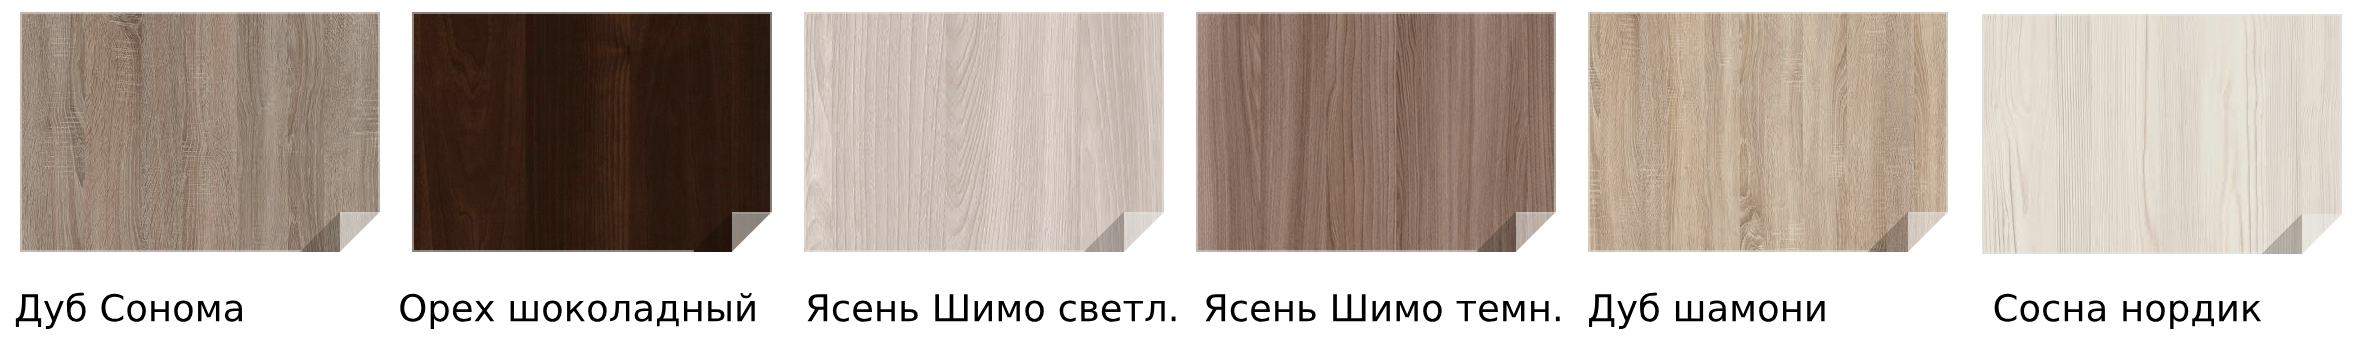 Материалы и цвета изготовления мебели для категории номеров Эконом